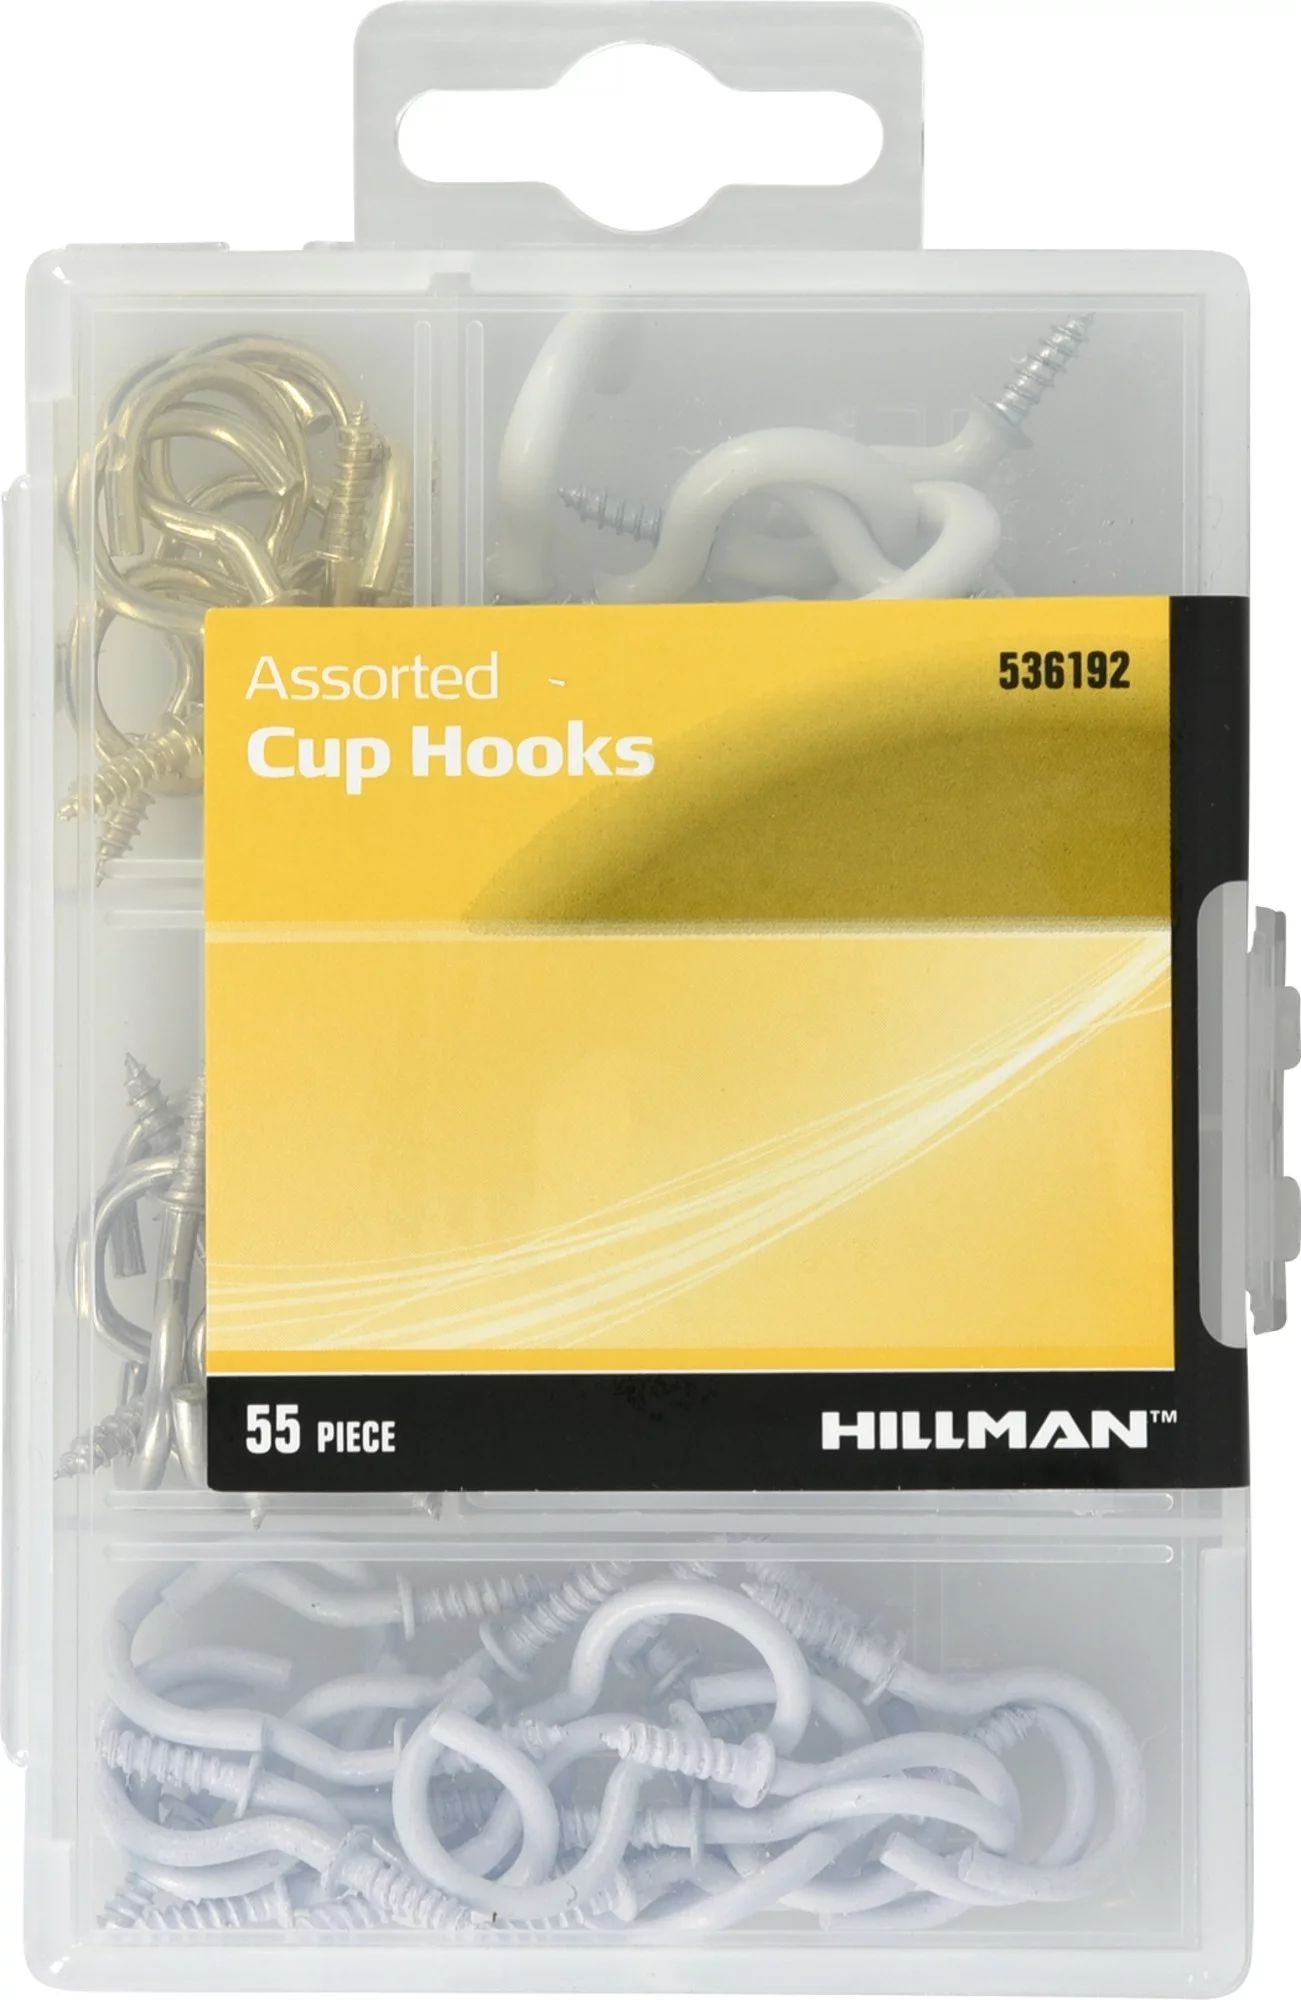 Hillman Cup Hook Assortment (for Lightweight Items) 55 Pack | Walmart (US)